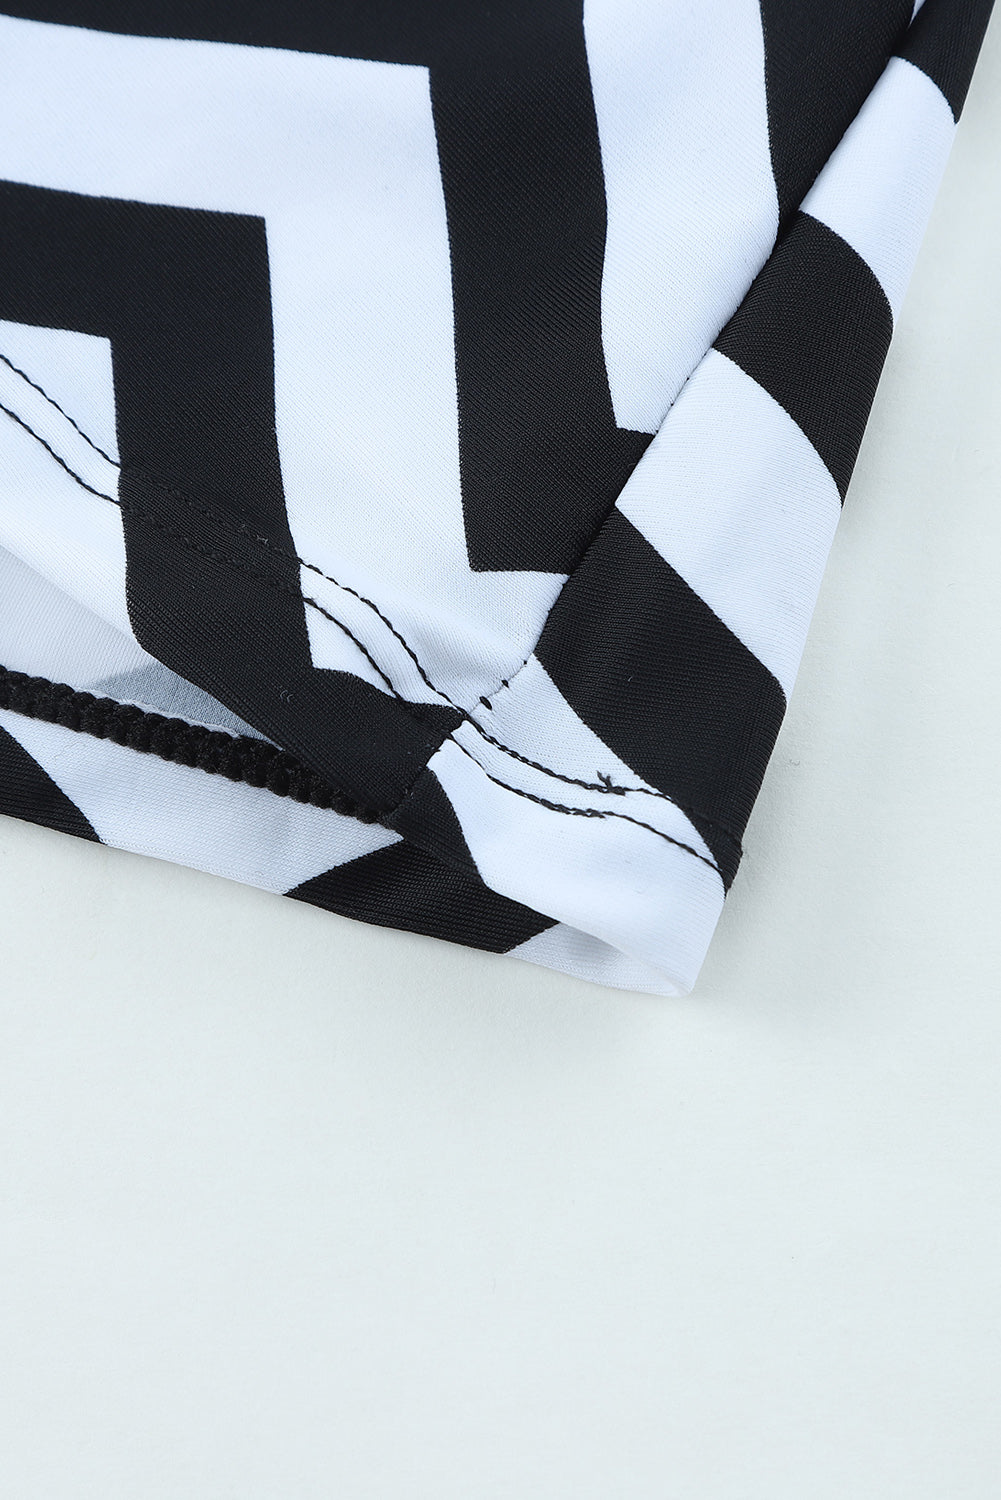 Black White Zigzag Print Mesh Splice 2pcs Tankini Swimsuit